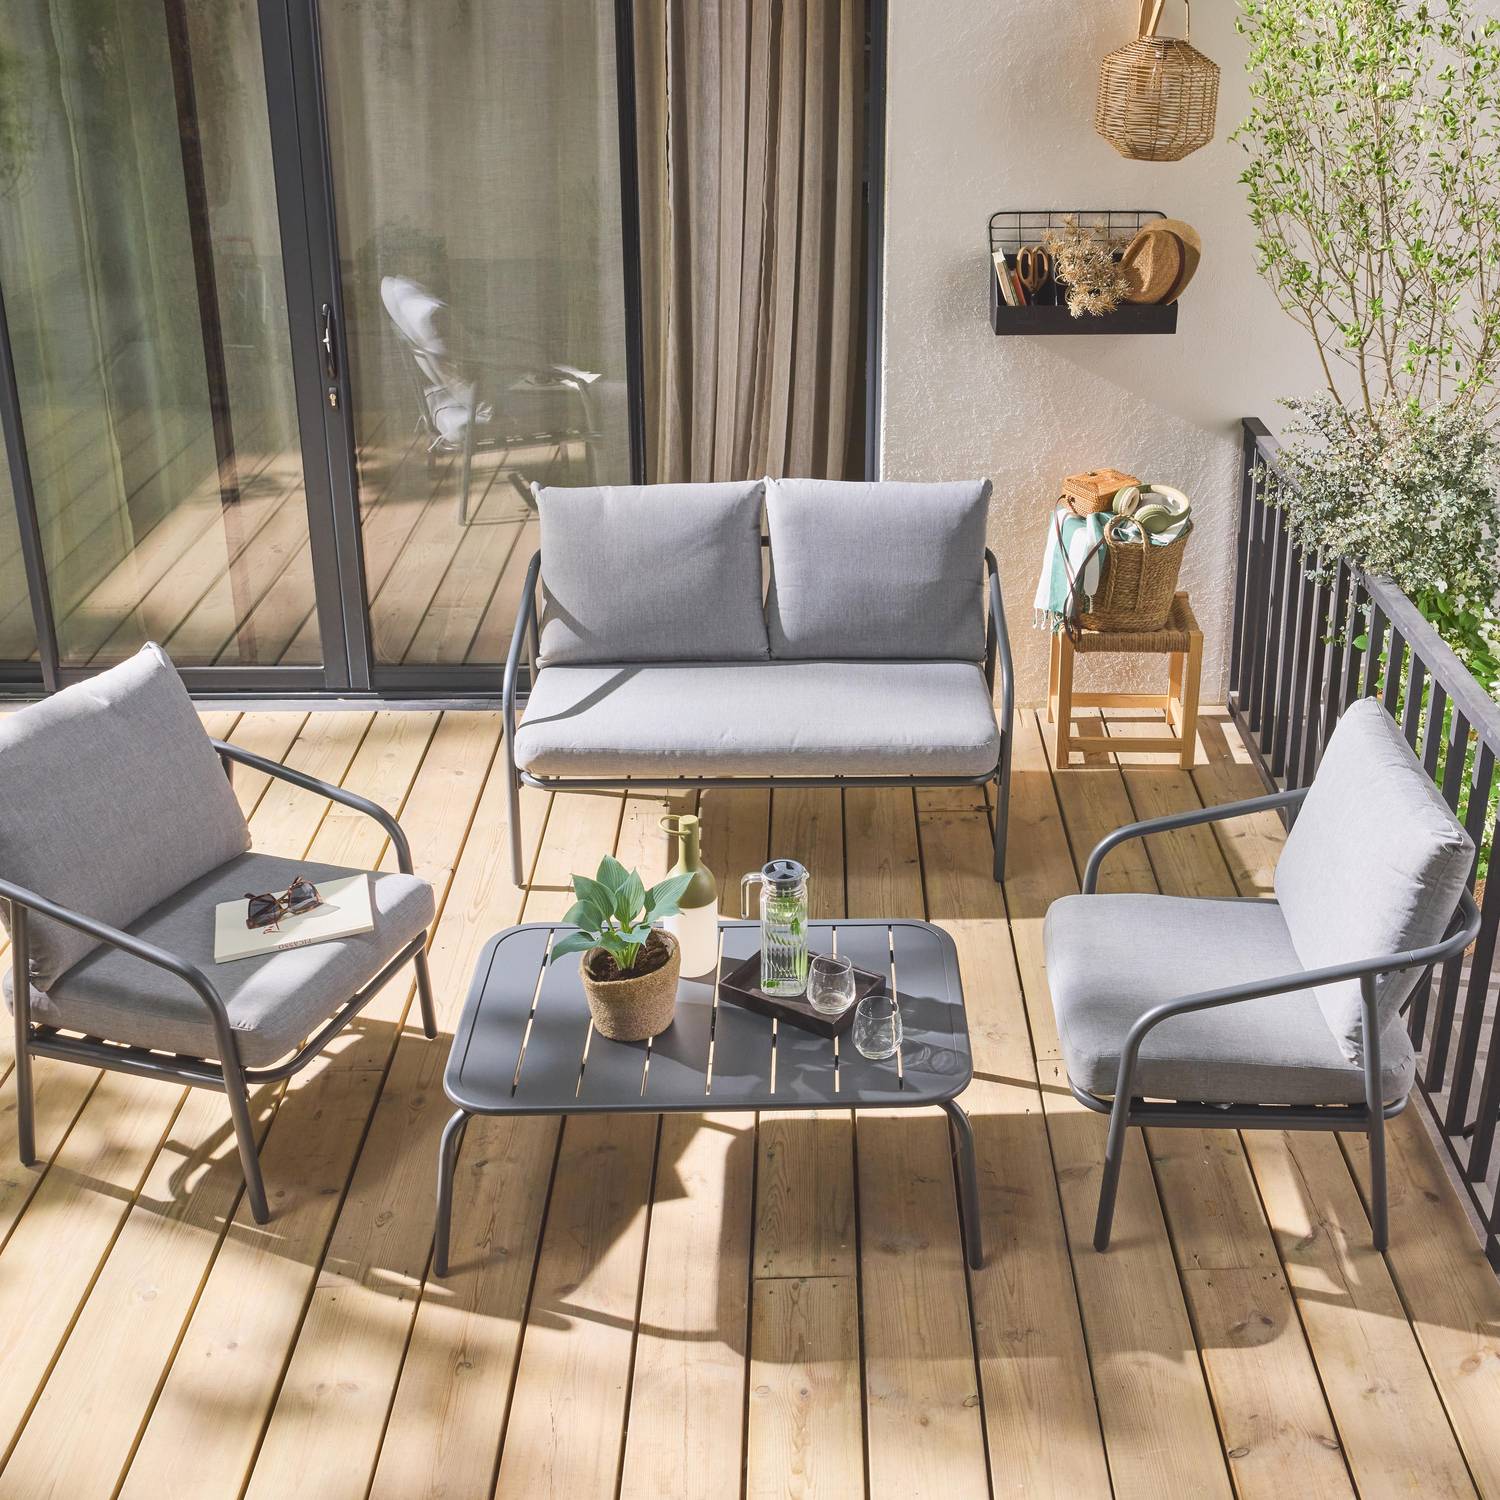 Gartenmöbelset aus Metall 4 Plätze, anthrazit mit grauen Kissen, 1 Sofa, 2 Sessel und 1 Tisch - Messina Photo2